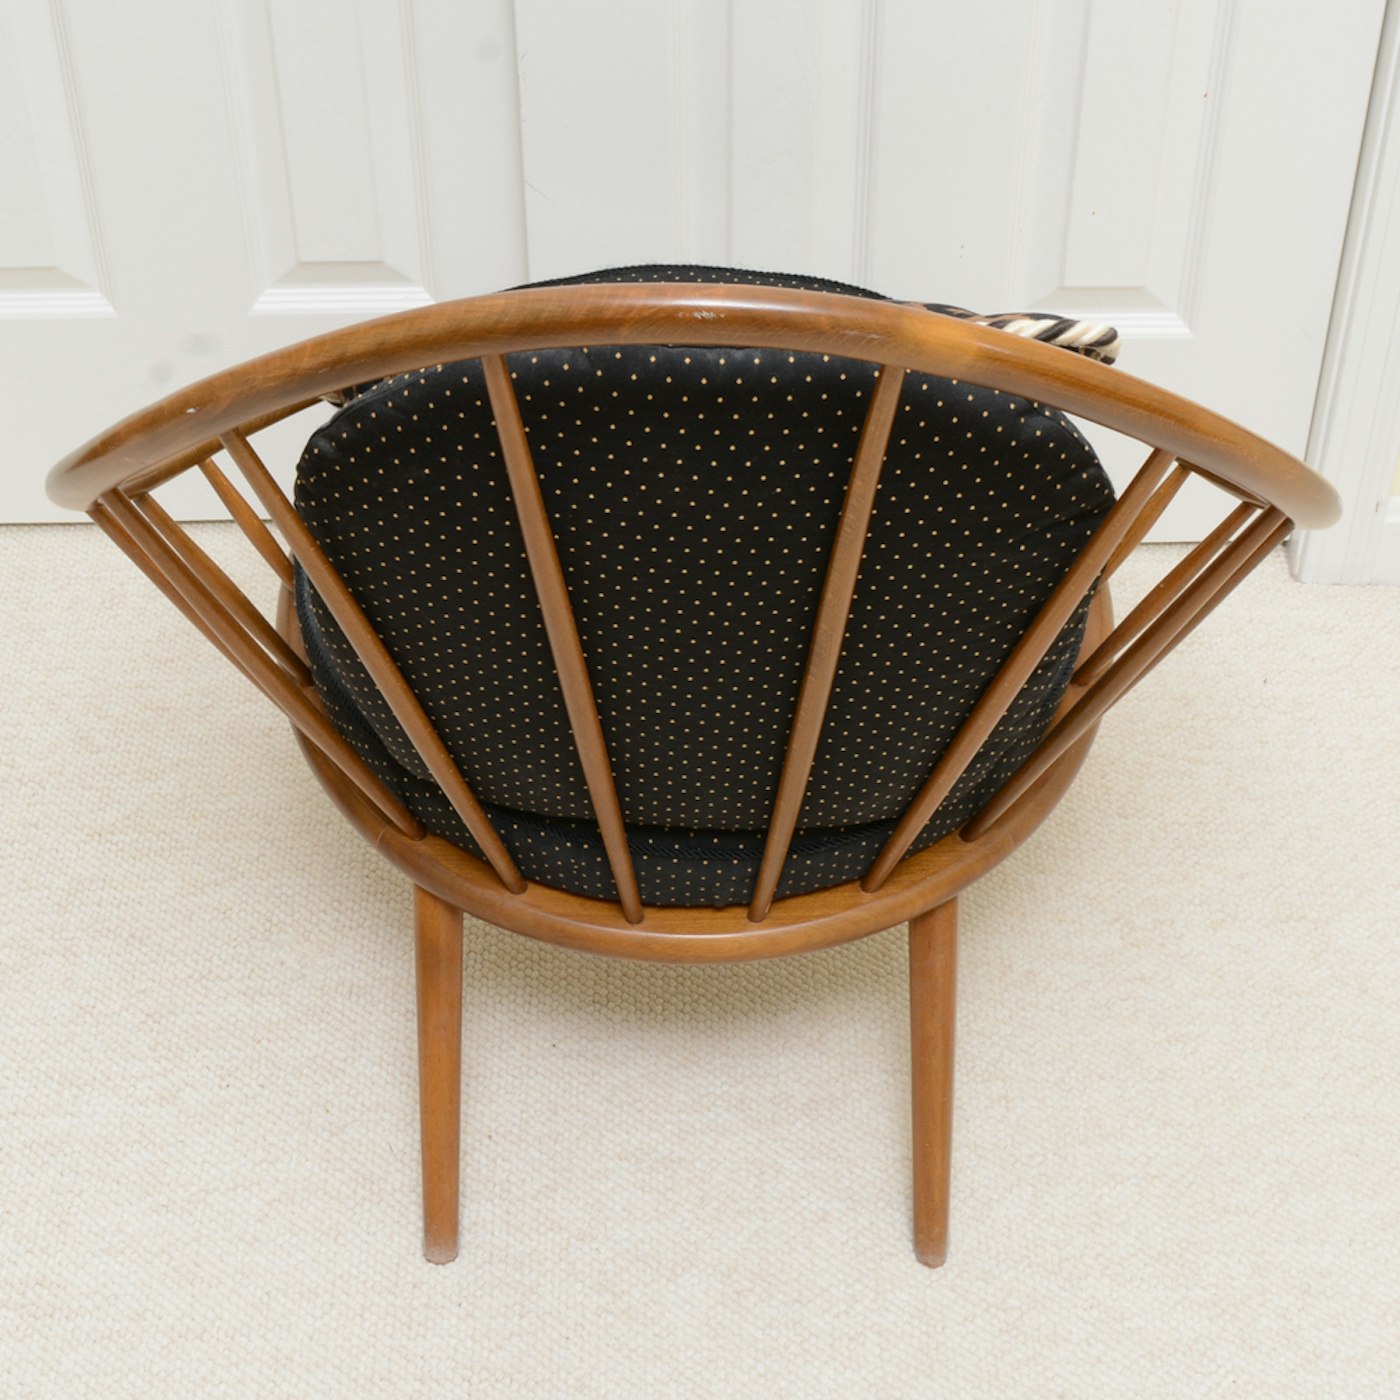 Modern Wooden Barrel Chair and Empire Wood Ottoman | EBTH